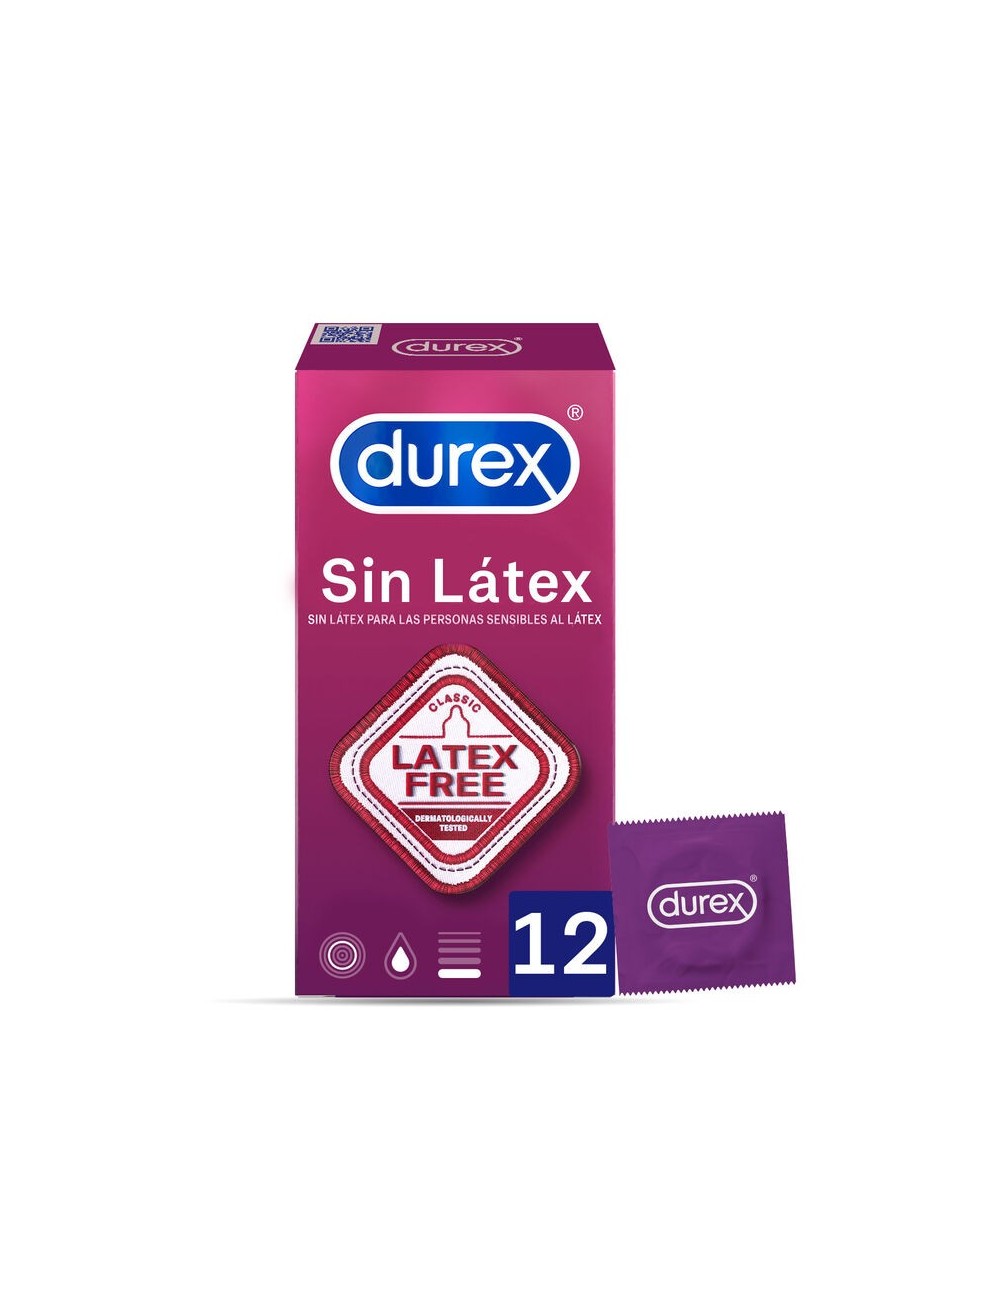 CONDOMS DUREX SANS UNITES DE LATEX 12 - Aphrodisiaques - Durex Condoms